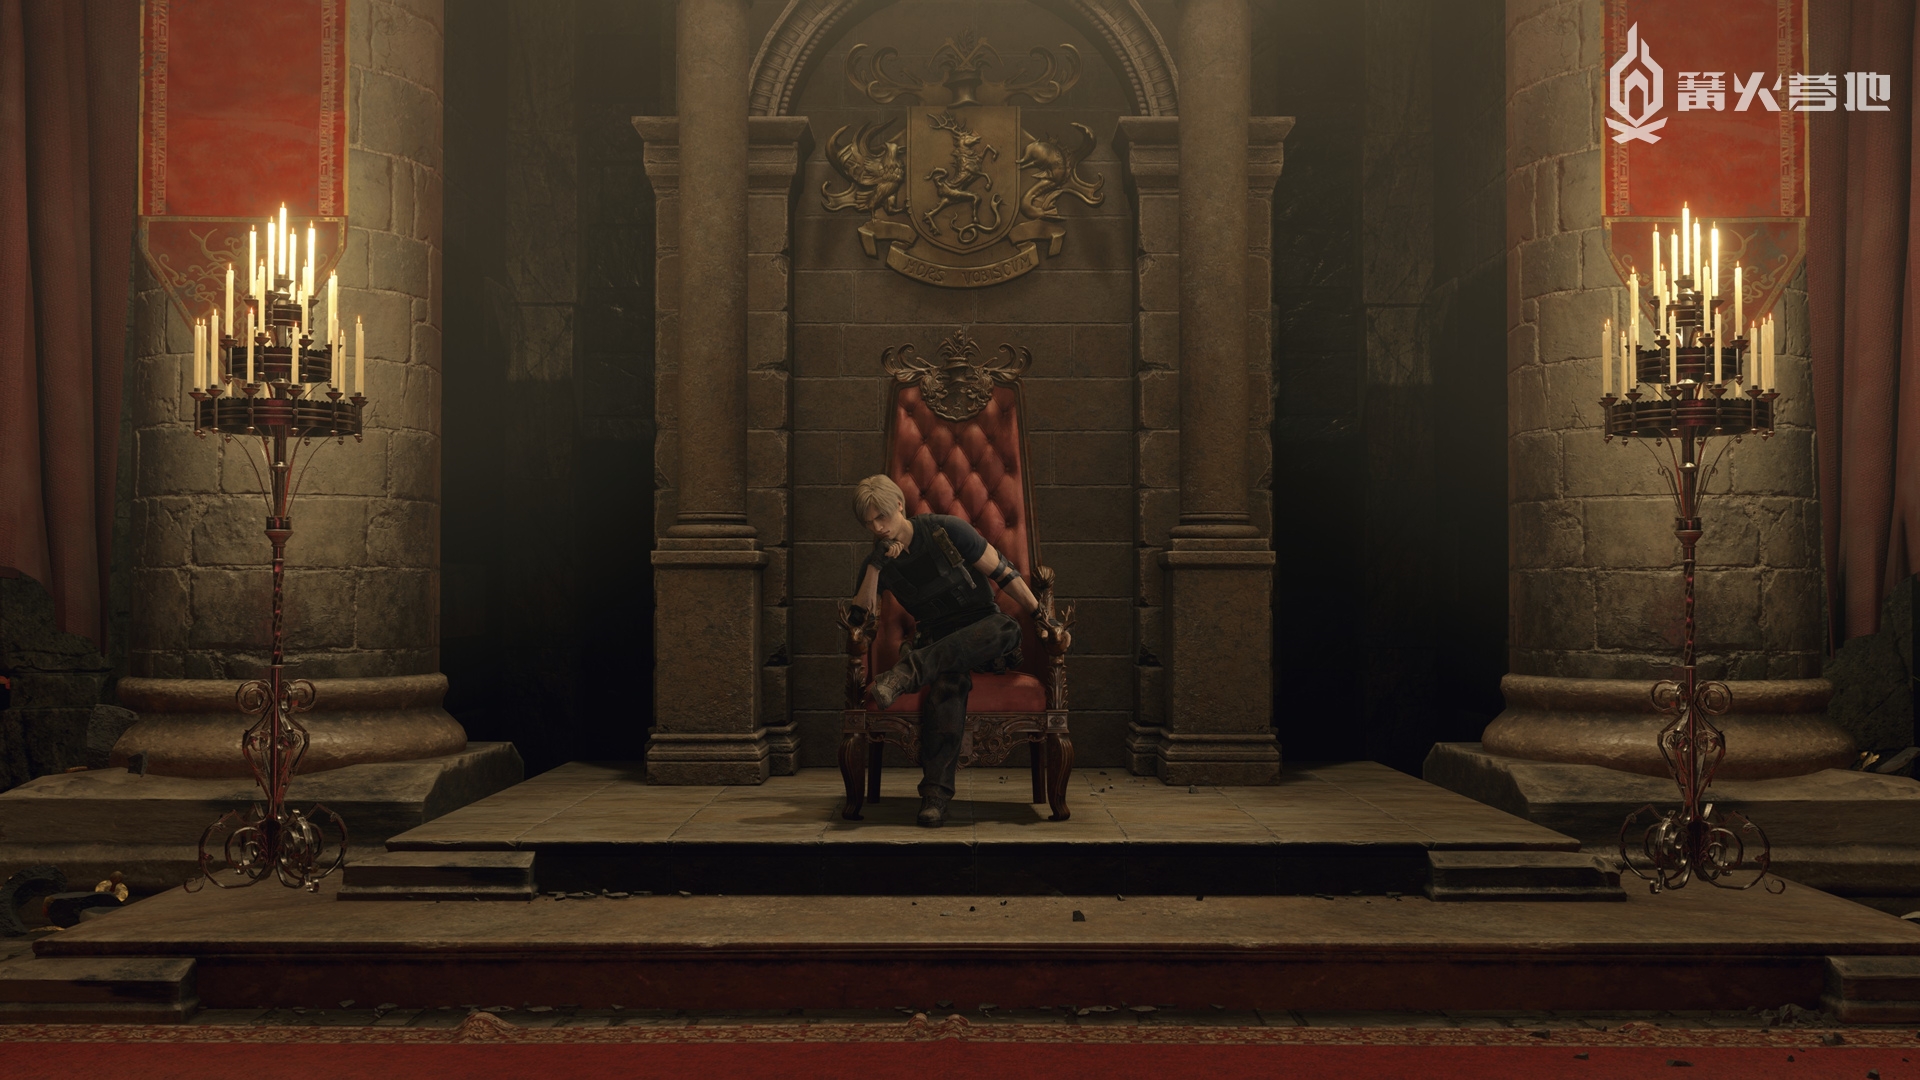 原版中里昂坐上王座的一幕在重制版里也得以重现